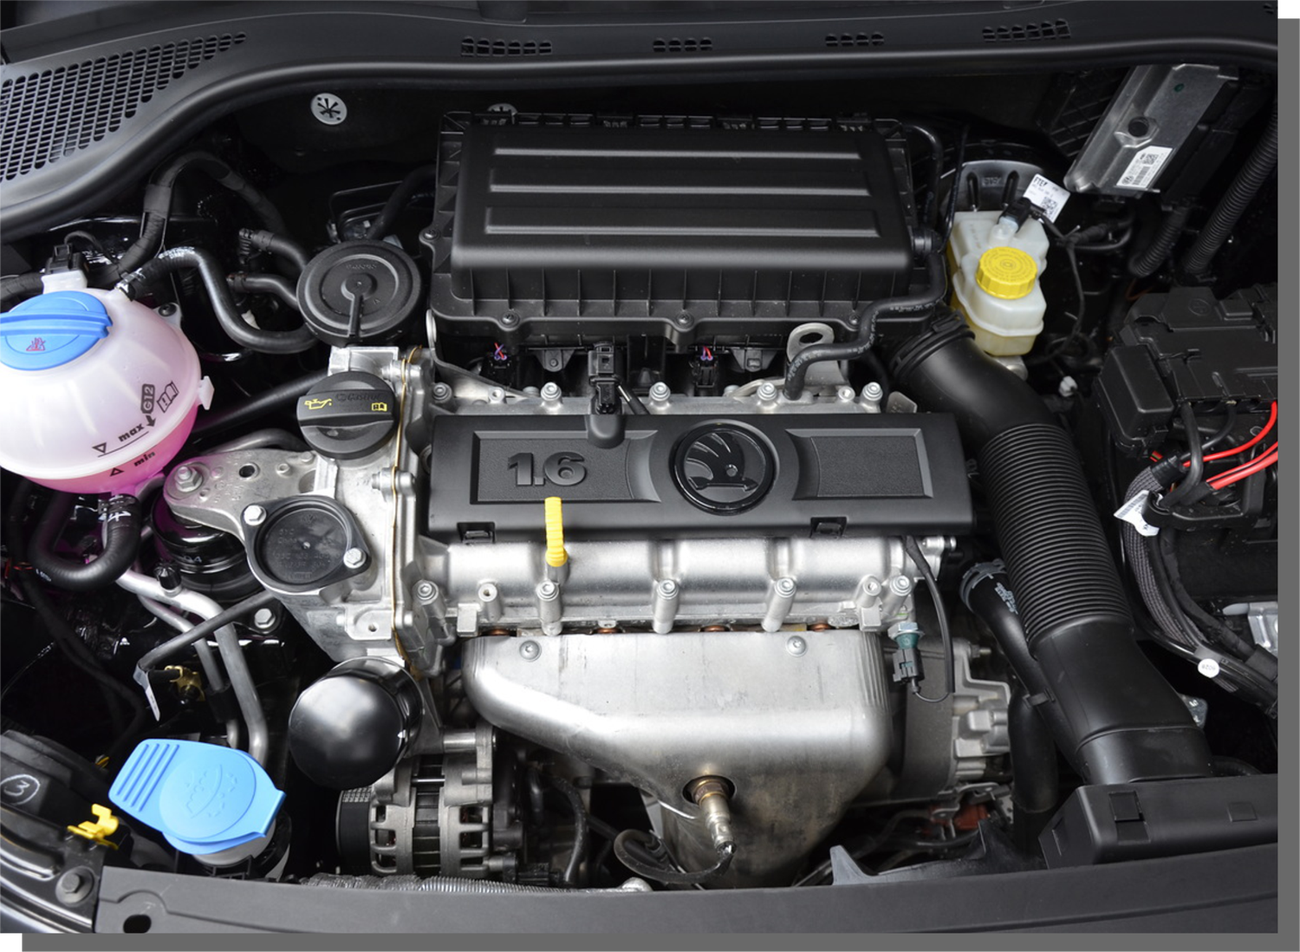 Volkswagen polo 1.6 двигателя. Мотор Polo 1.6 MPI. Мотор Рапид 1.6 MPI 110. Мотор поло седан 1.6. Двигатель Фольксваген поло седан 1.6 105 л.с.